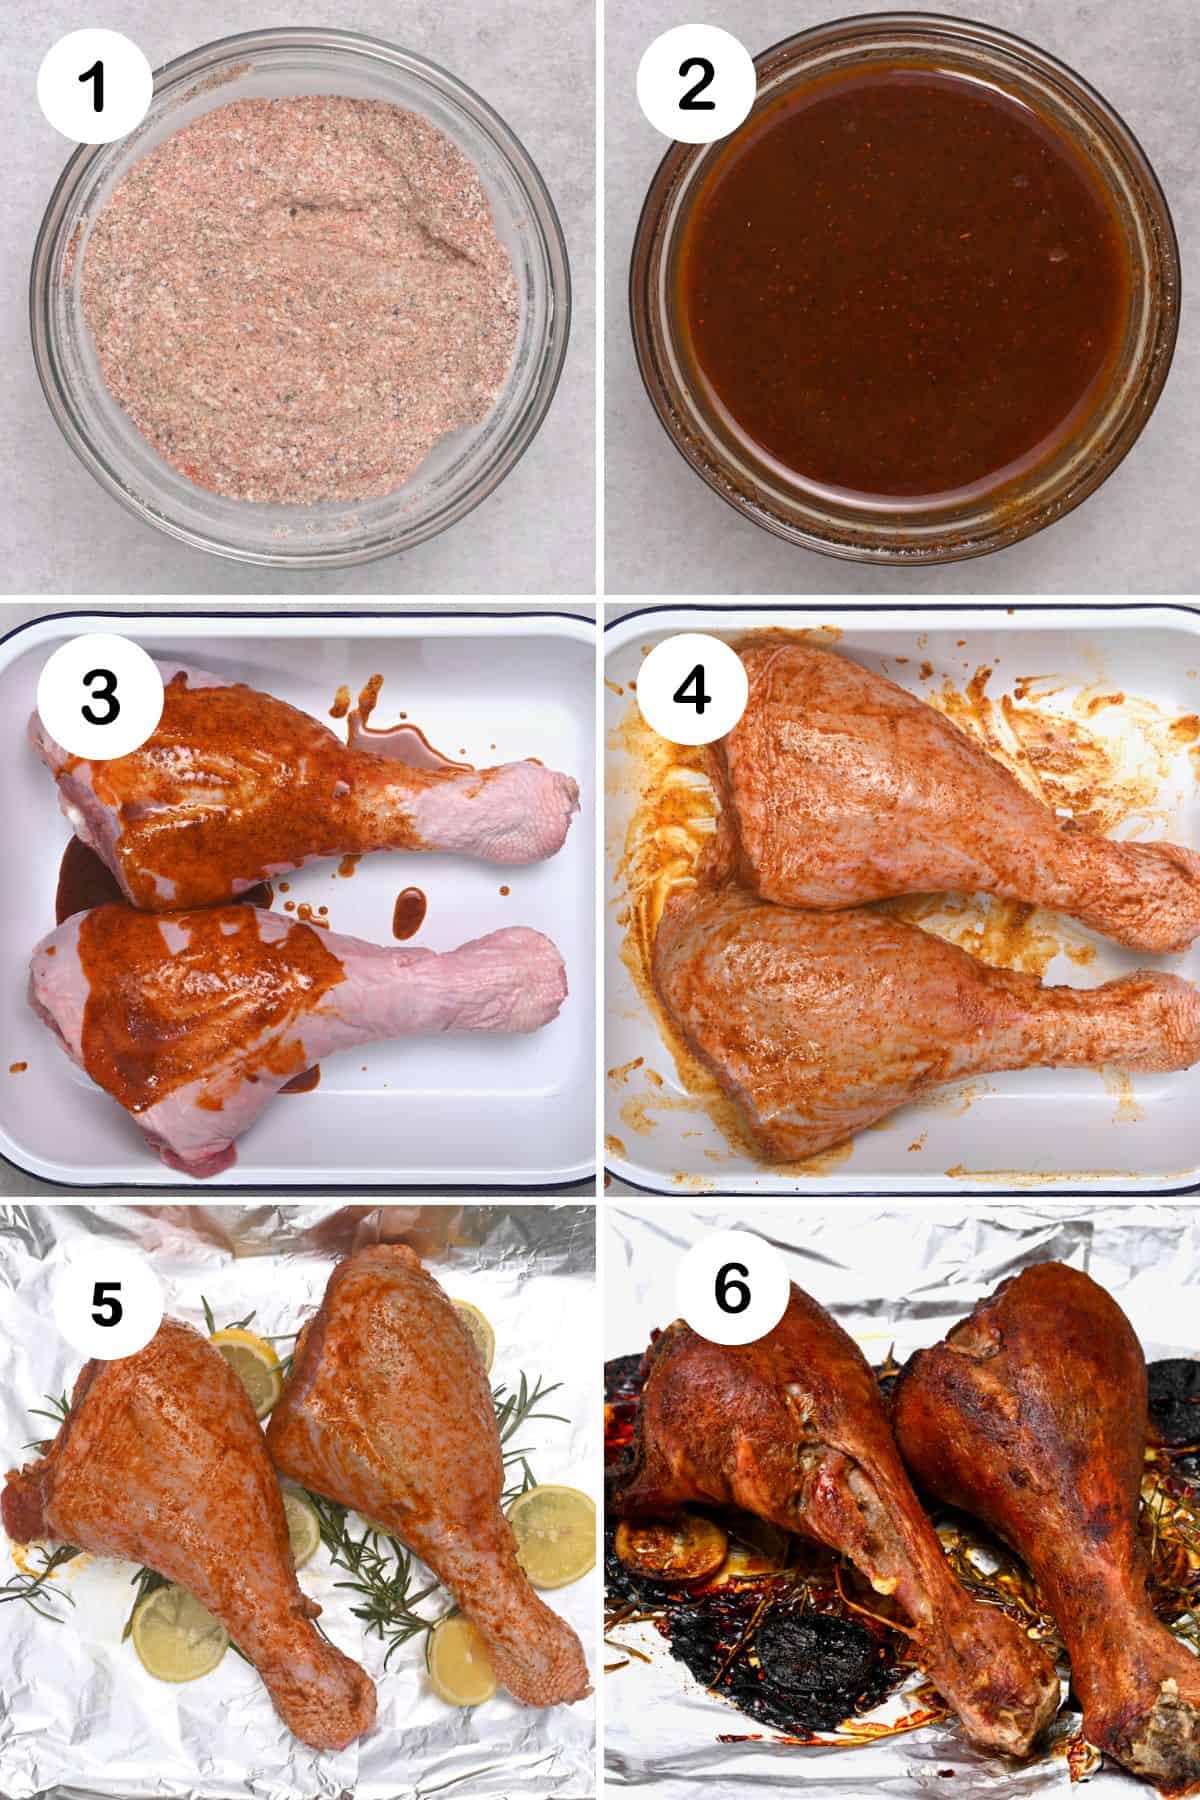 Steps for preparing turkey legs for baking